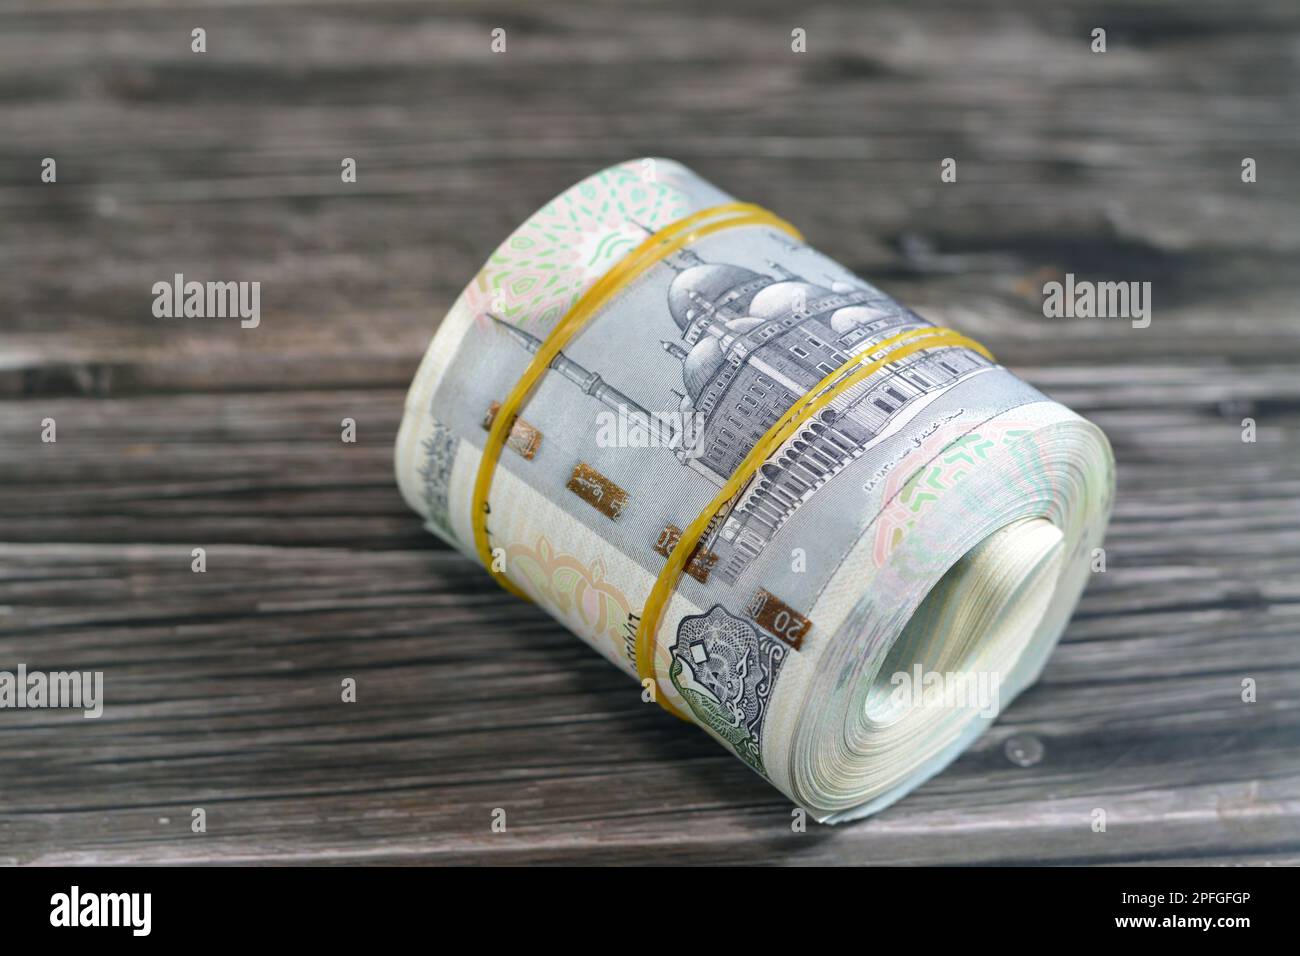 20 EGP LE vingt livres d'Égypte billets d'argent comptant enroulé avec des bandes de caoutchouc avec une image de la mosquée Mohammed Ali, char de guerre pharaonique, frise de Banque D'Images